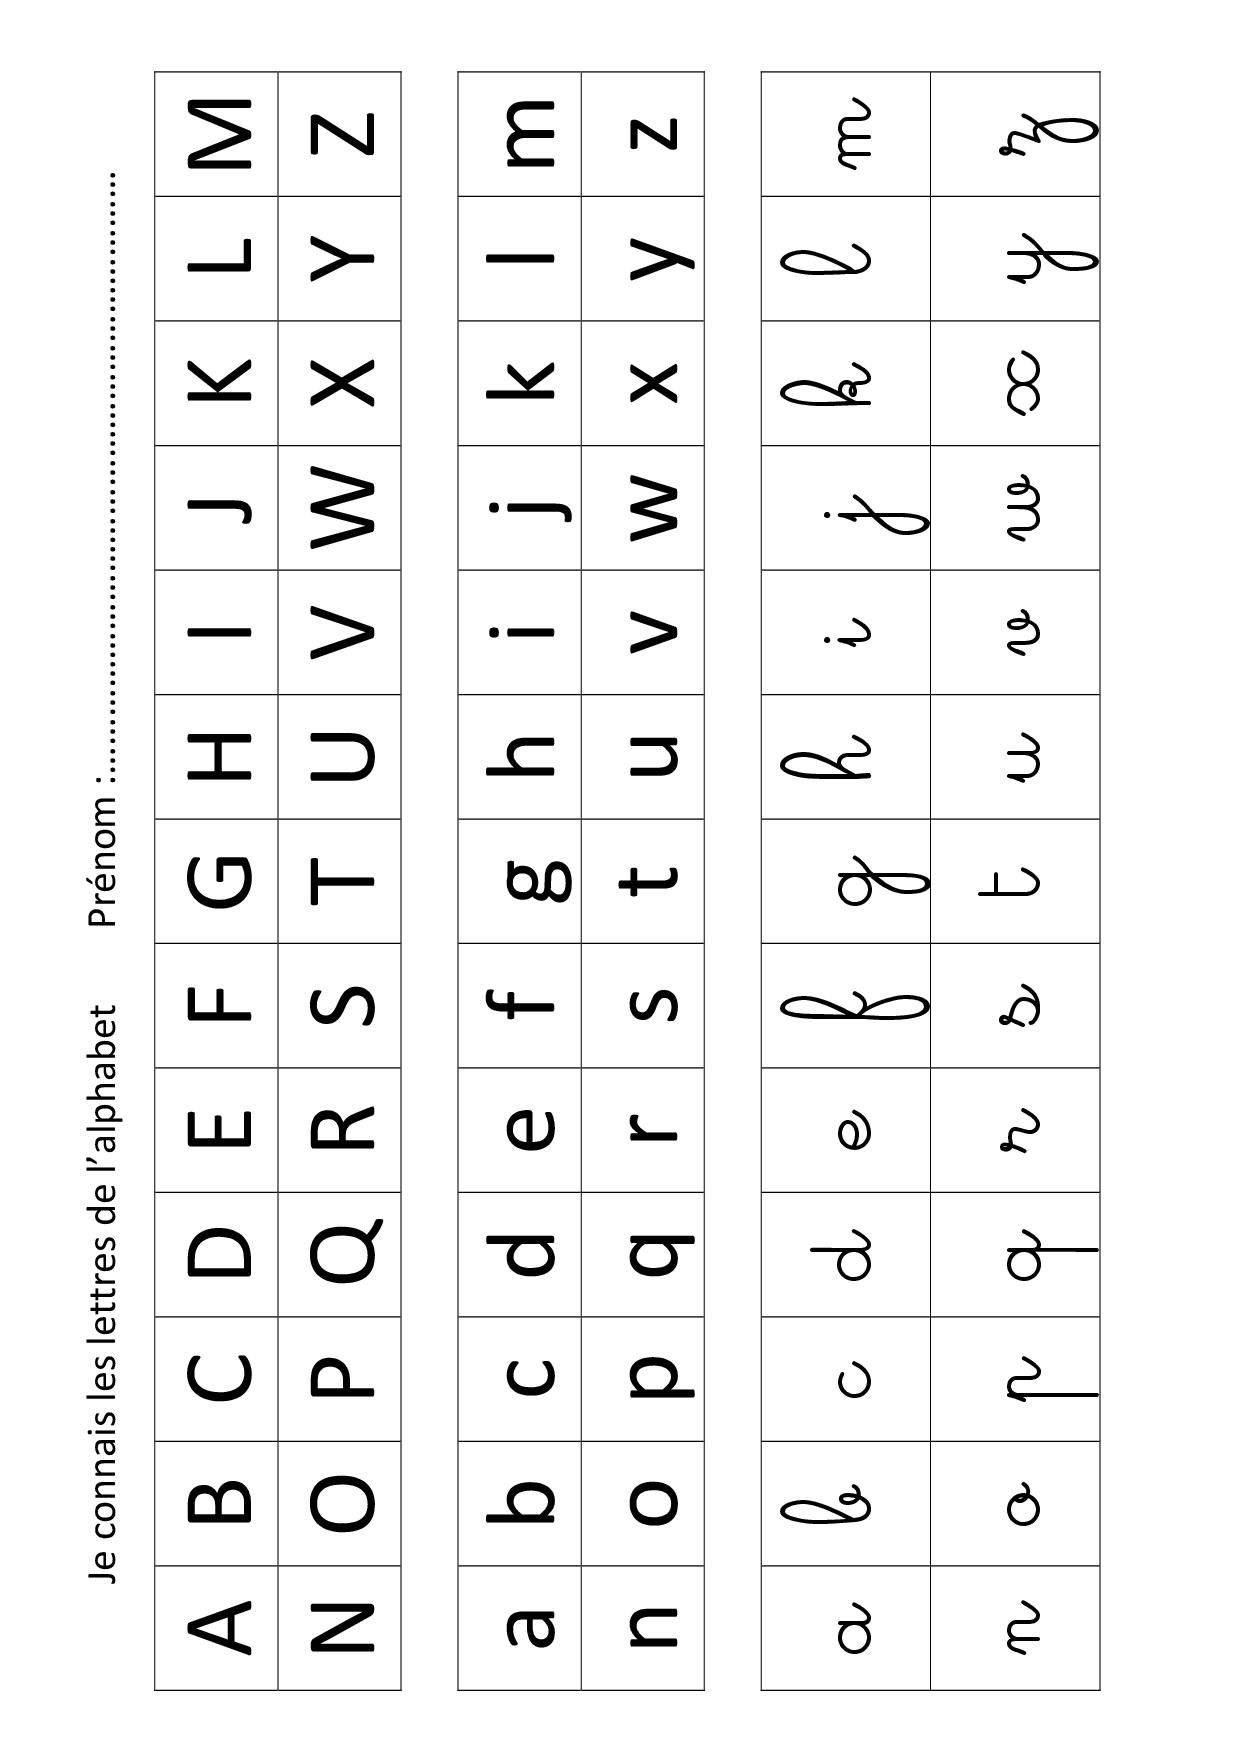 Apprendre Les Lettres De L&amp;#039;alphabet Avec Leap Frog à Jeux Pour Apprendre L Alphabet 